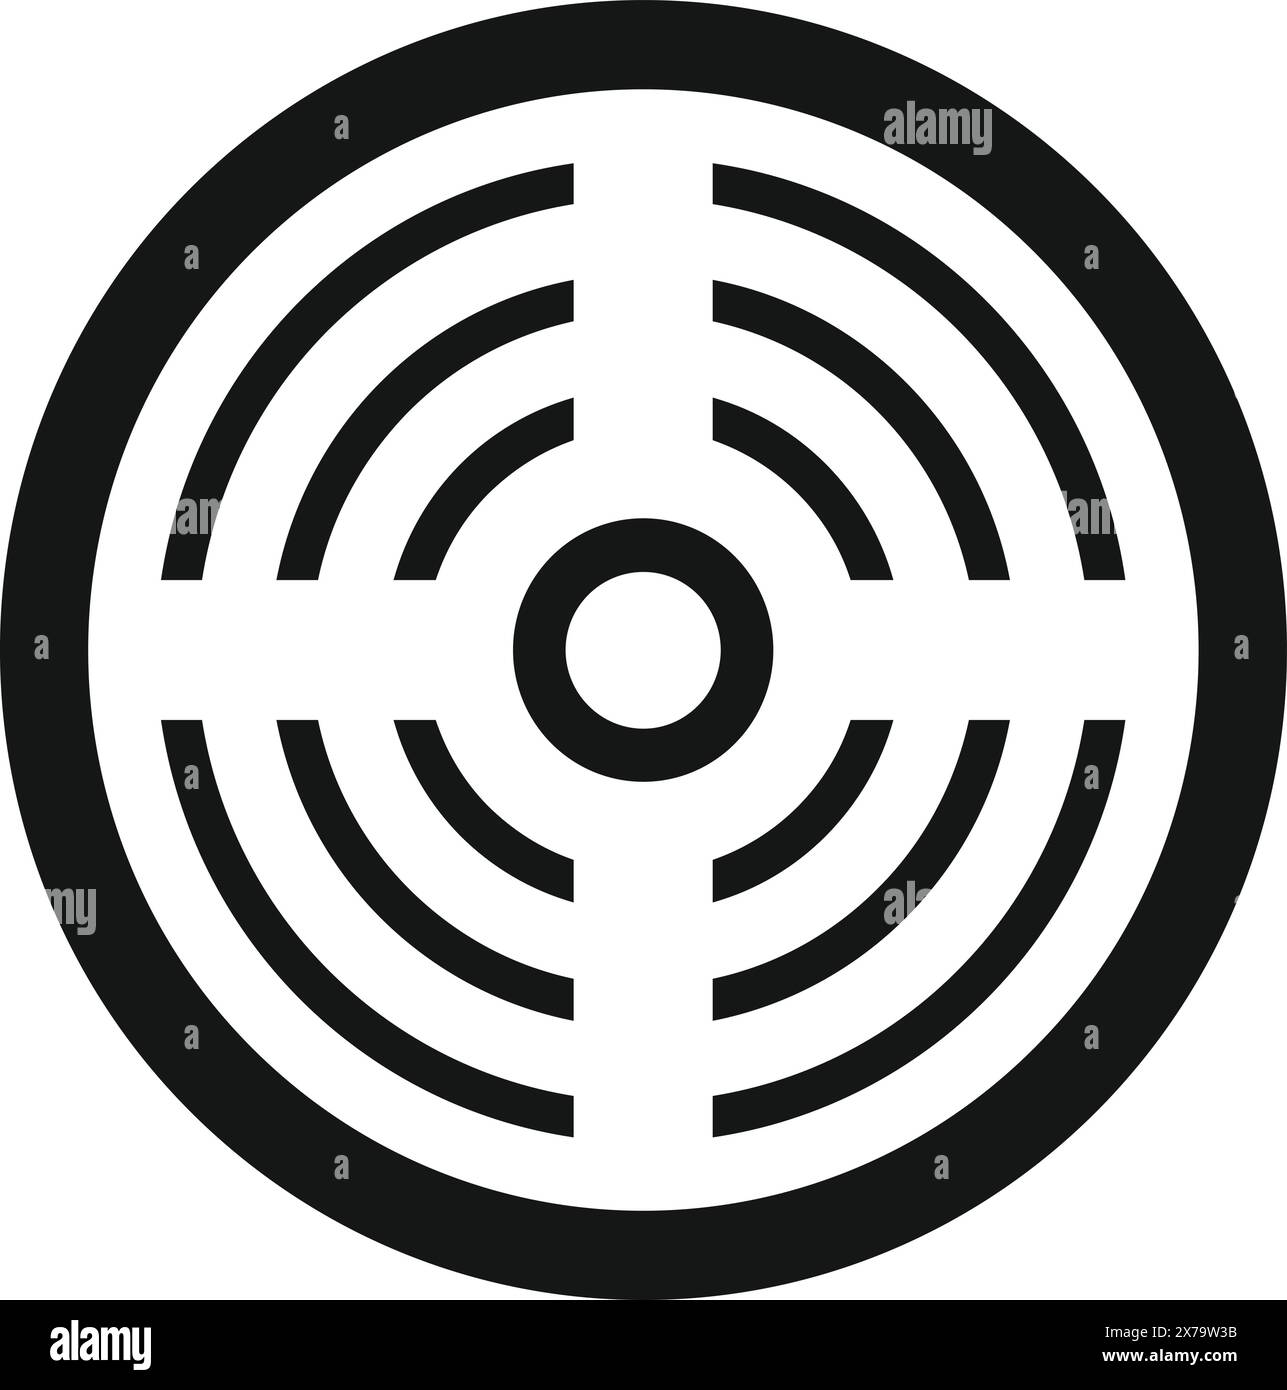 Vereinfachtes Labyrinth in Schwarzweiß, das Auswahl, Herausforderung oder Komplexität repräsentiert Stock Vektor